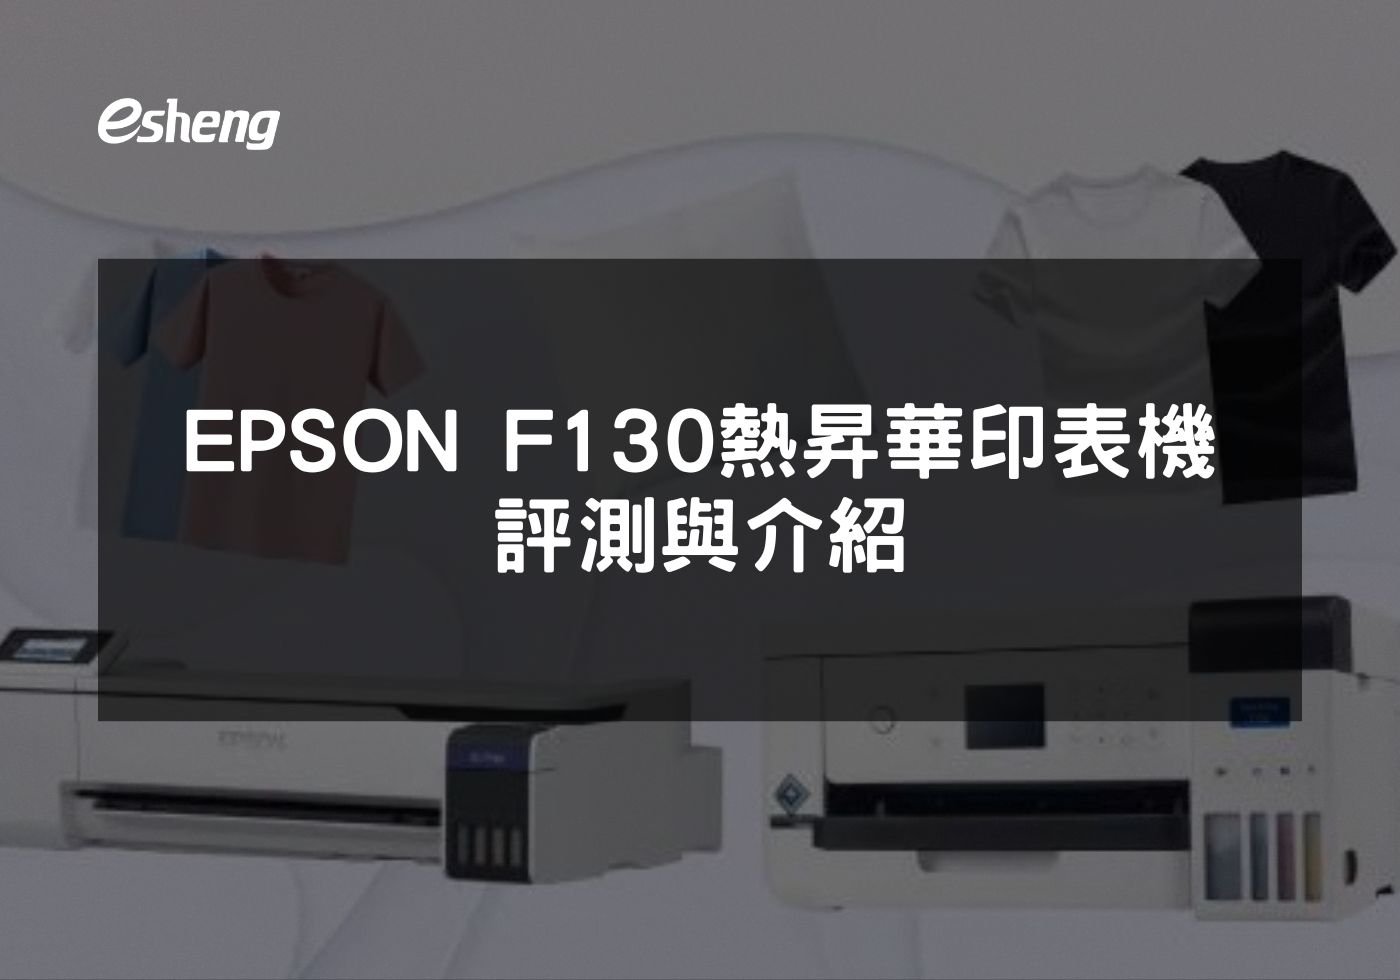 閱讀更多文章 EPSON F130 熱昇華印表機評測與介紹